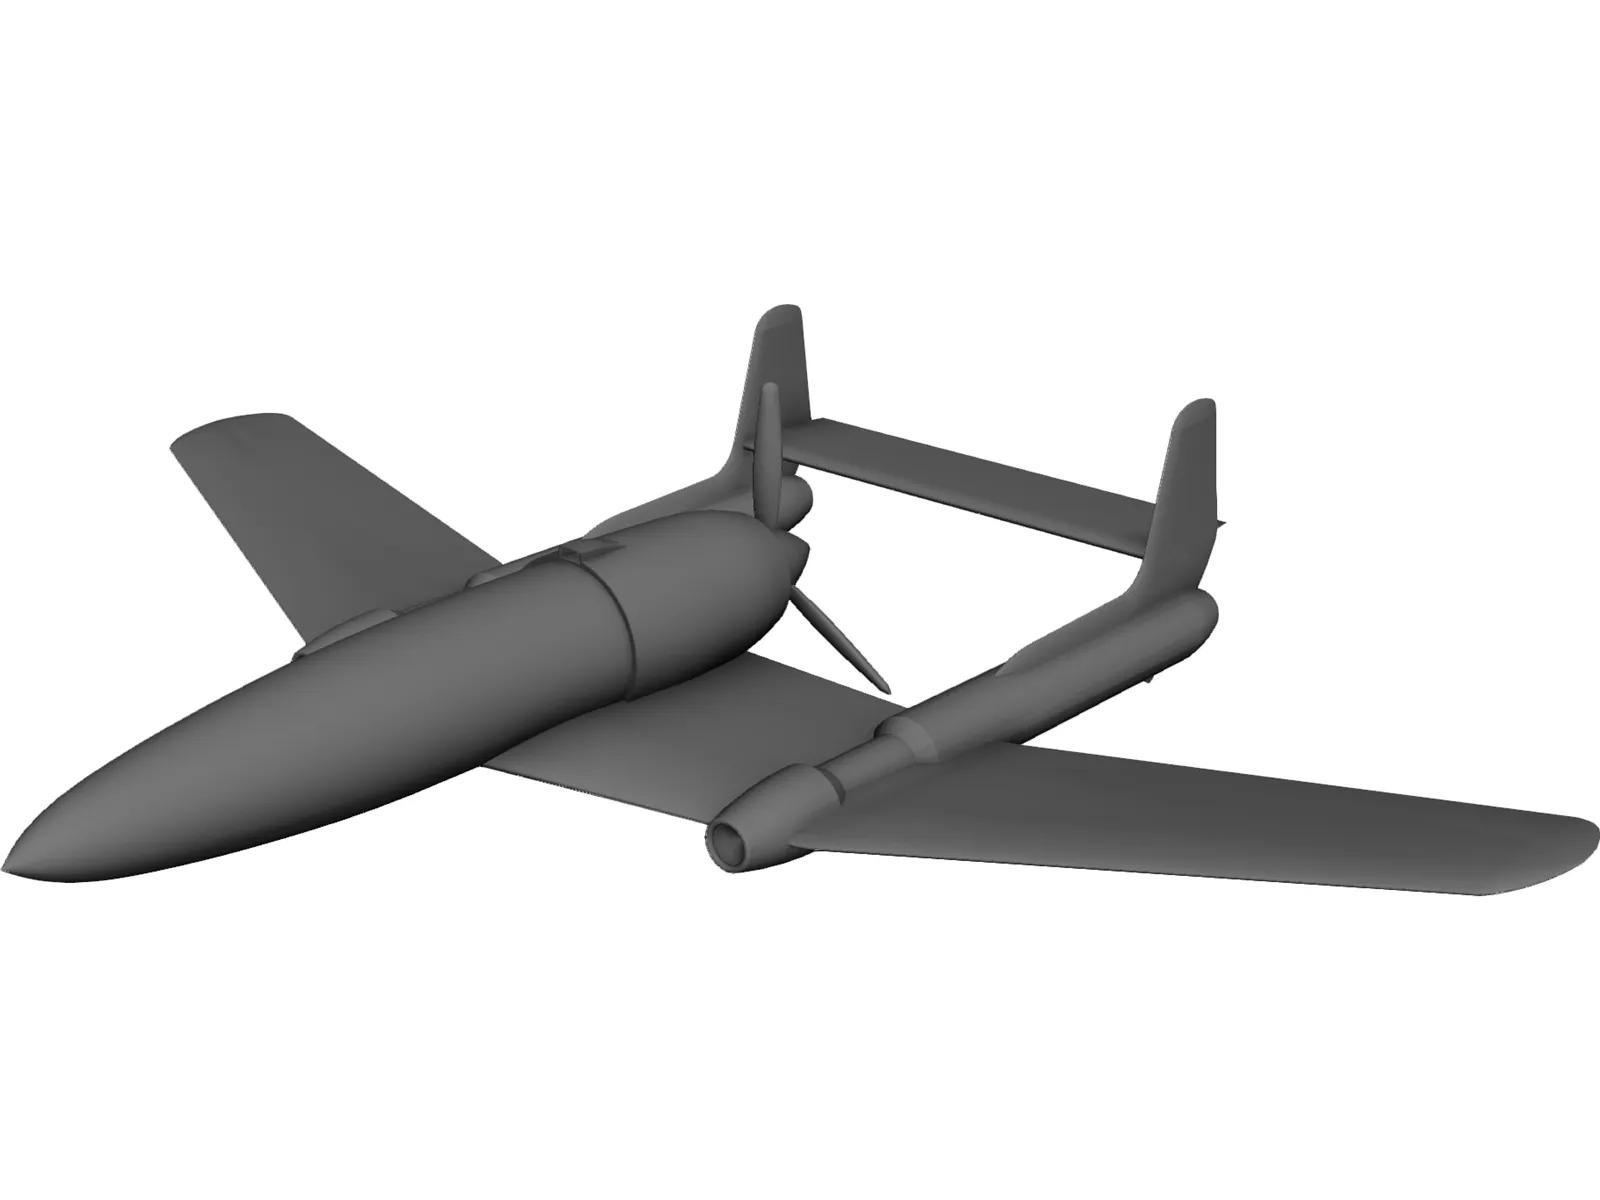 V-1 Buzz Bomb 3D Model - 3DCADBrowser